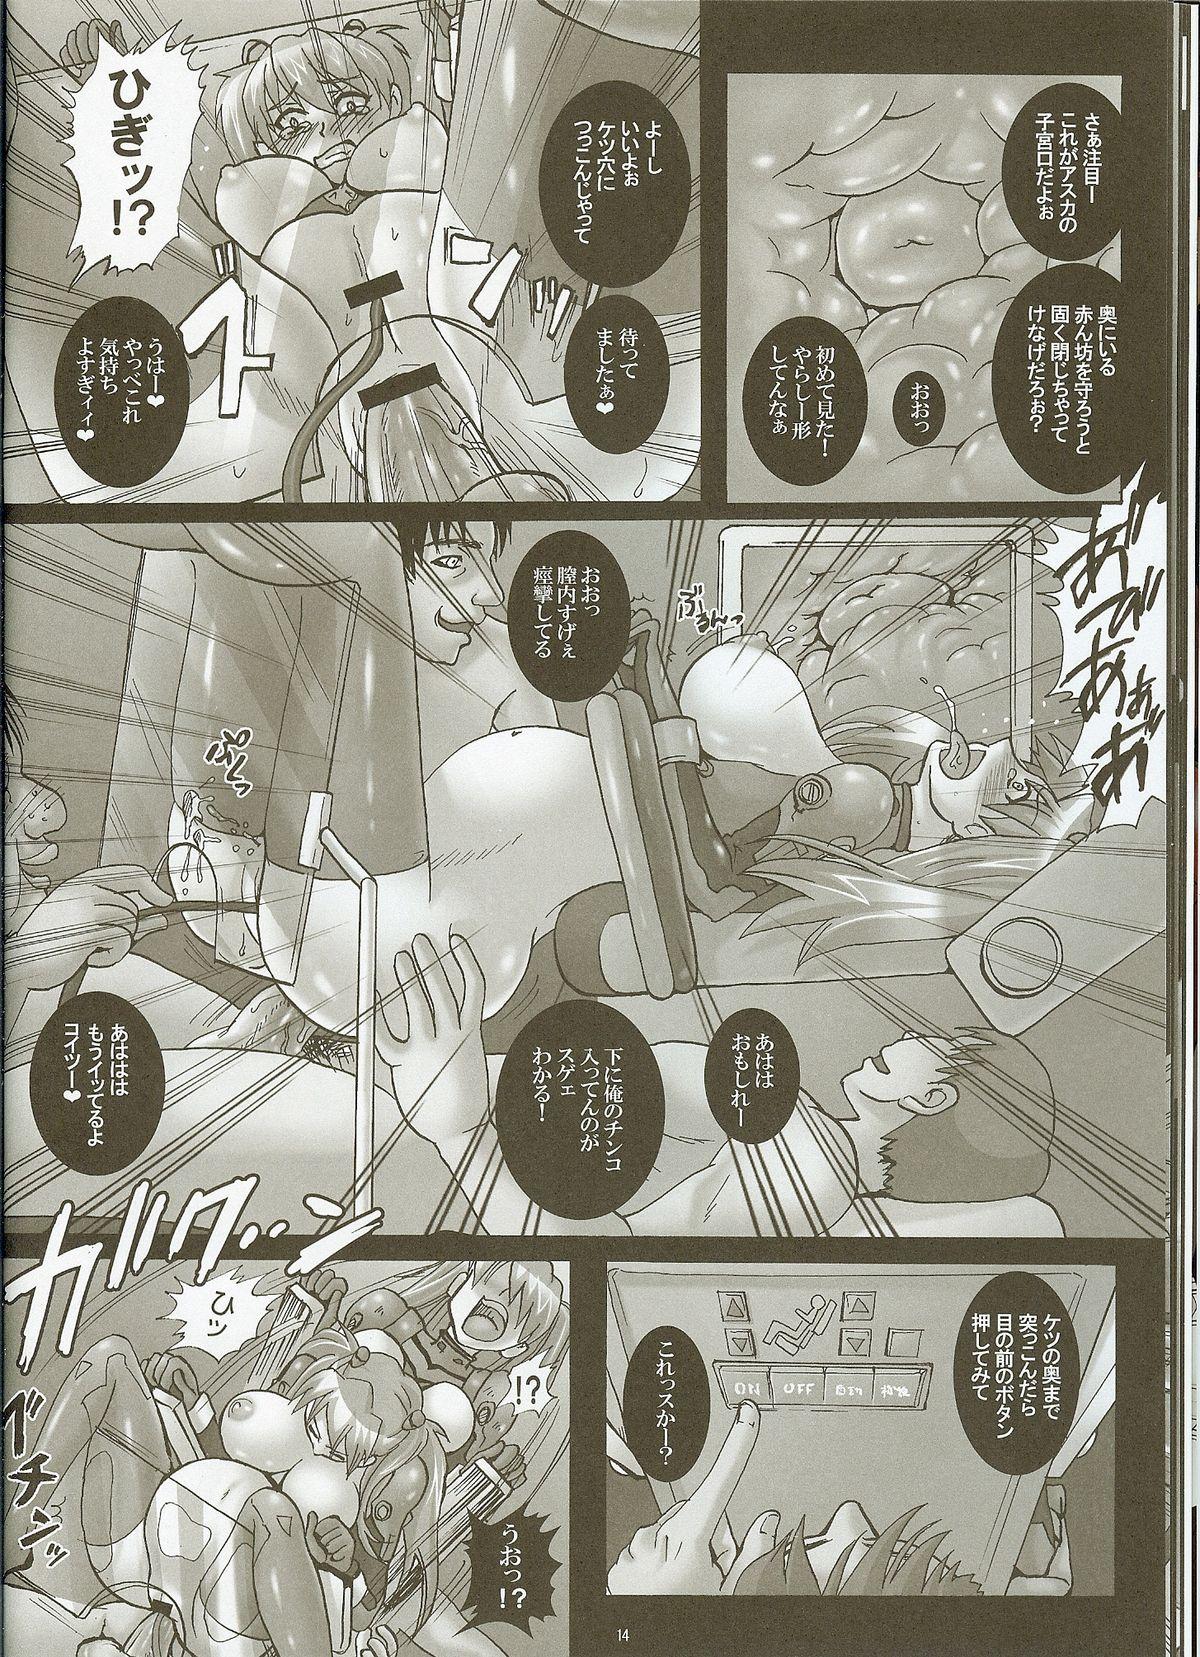 Gaycum Shinryou dai no Botai Omocha ～ Asuka, Ninshin 6 Kagetsu ～ - Neon genesis evangelion Retro - Page 12